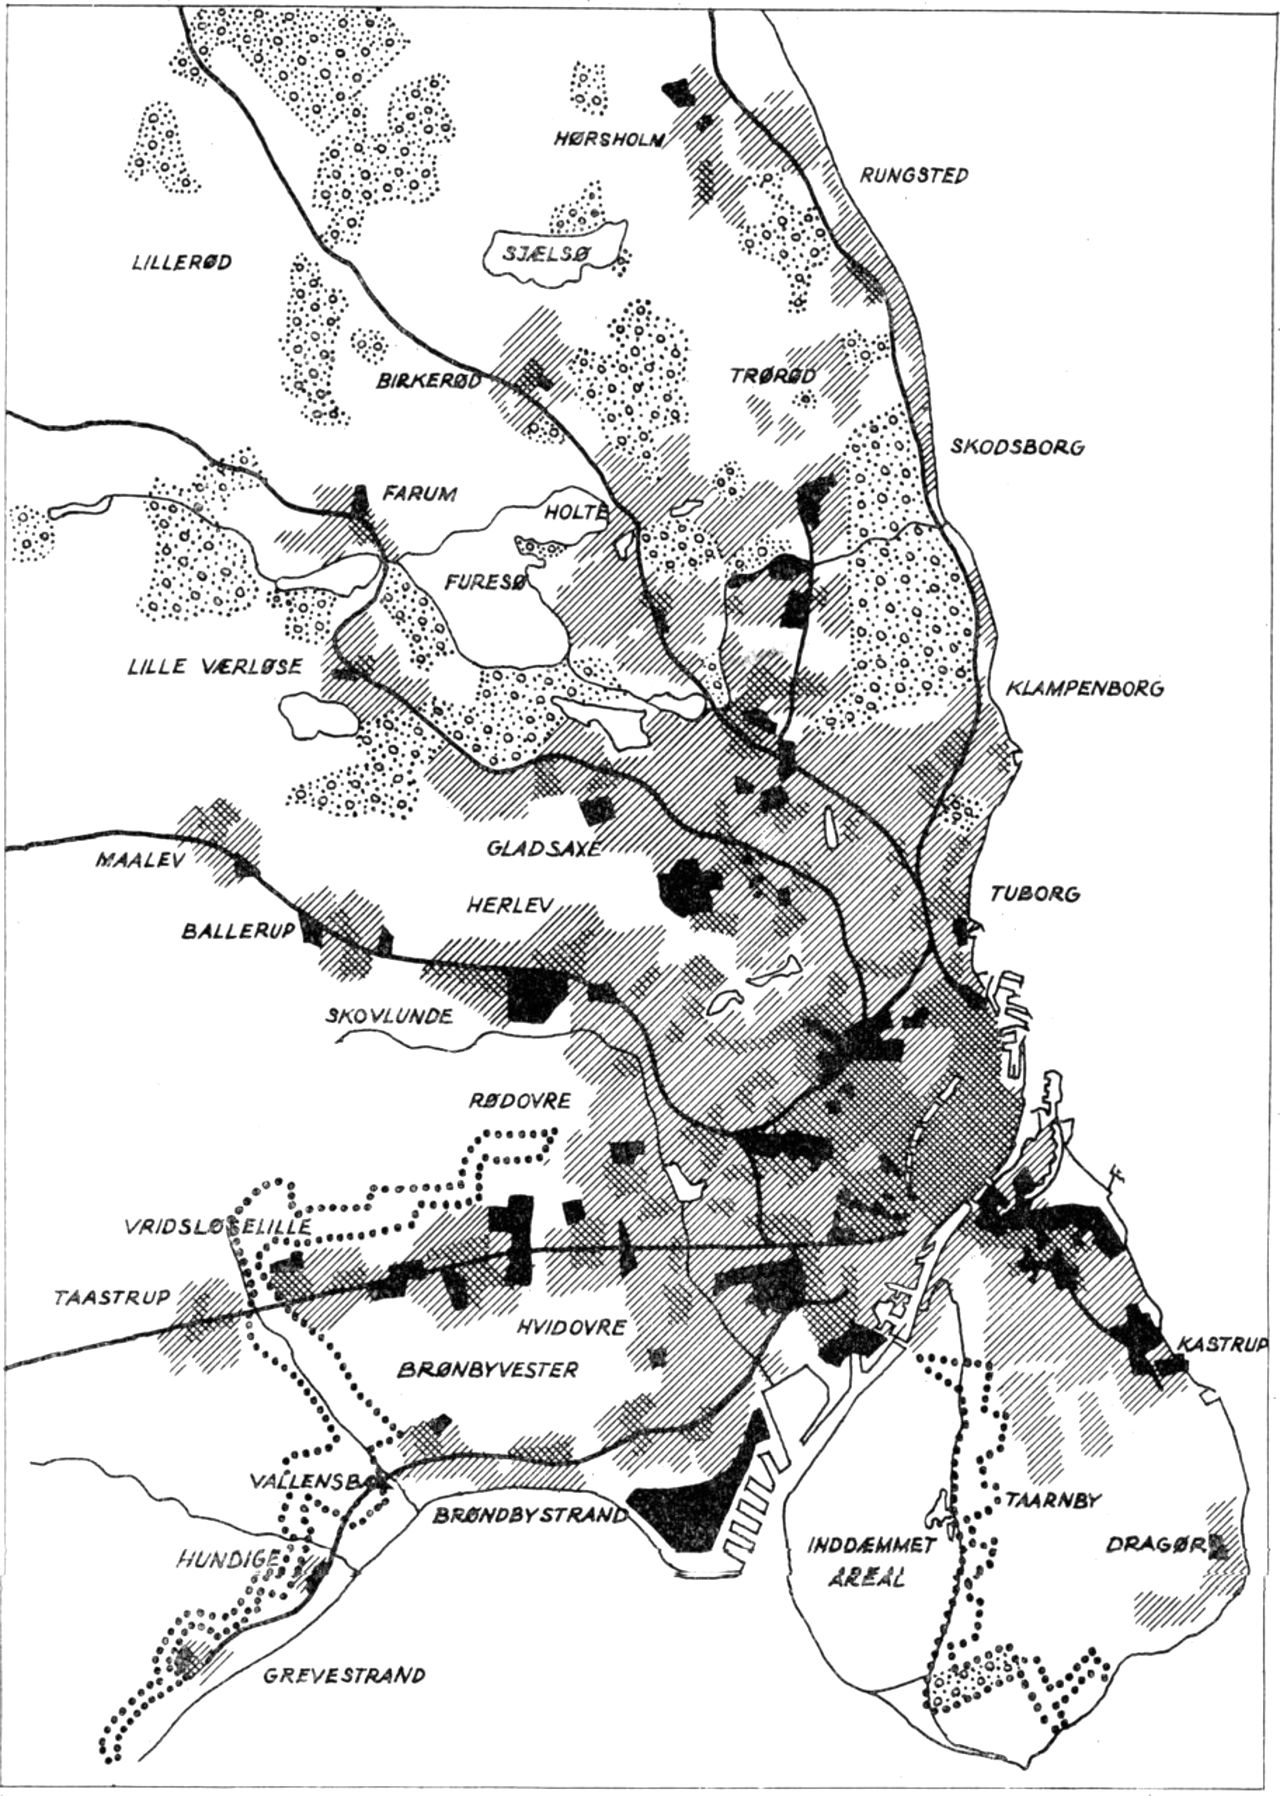 (Kort). Skitseforslag til en egnsplan, 1948. De fremtidige boligområder er angivet med skravering og erhvervsområderne med sort. Områderne, der er omsluttet af en prikket linie (vest for København og på Amager) var foreslået tilplantet med skov.